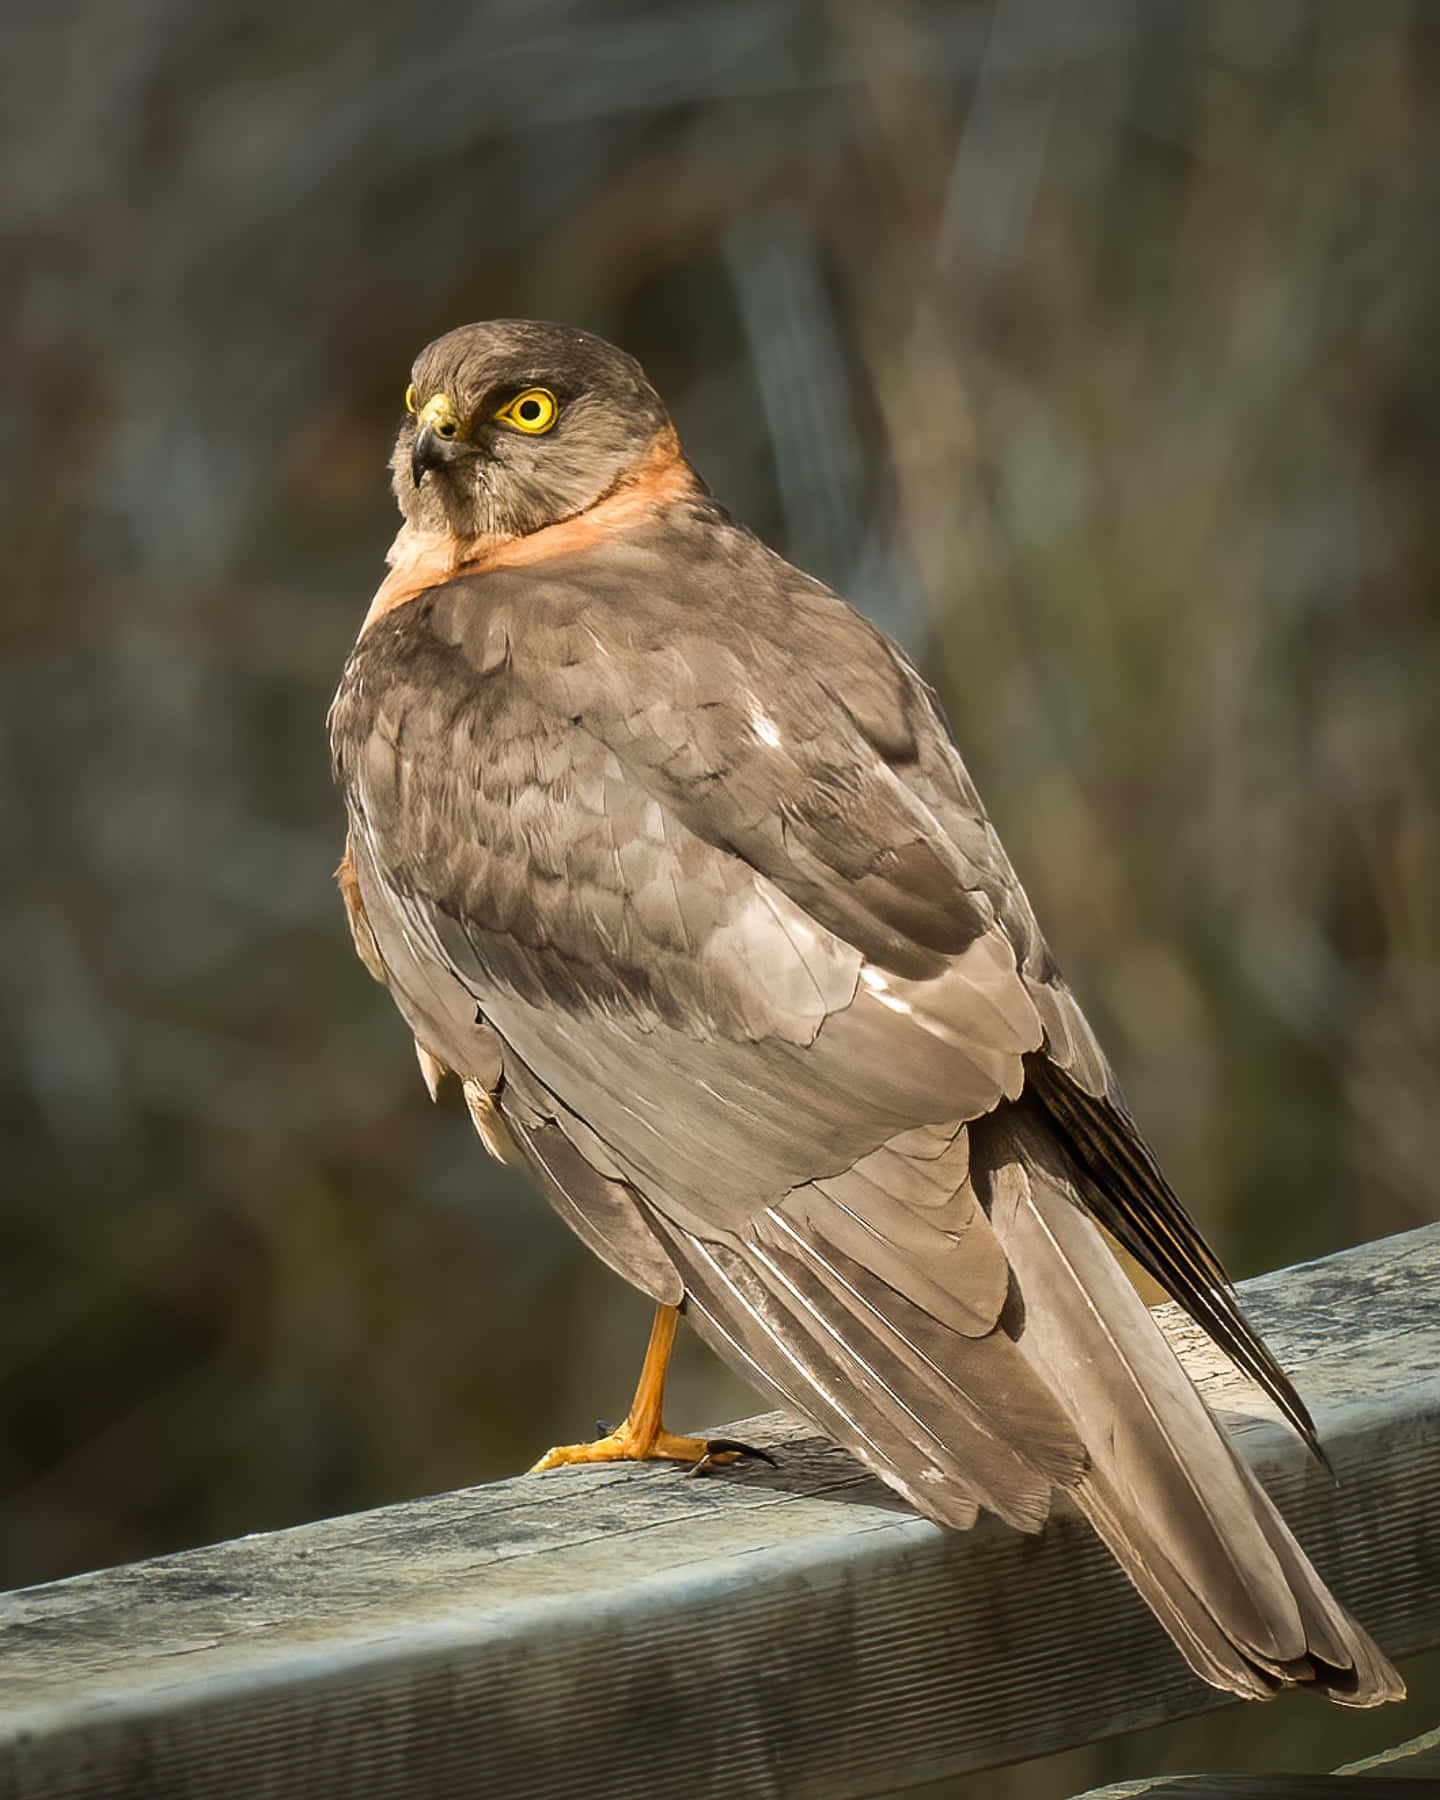 A close-up shot of a majestic Sparrow Hawk